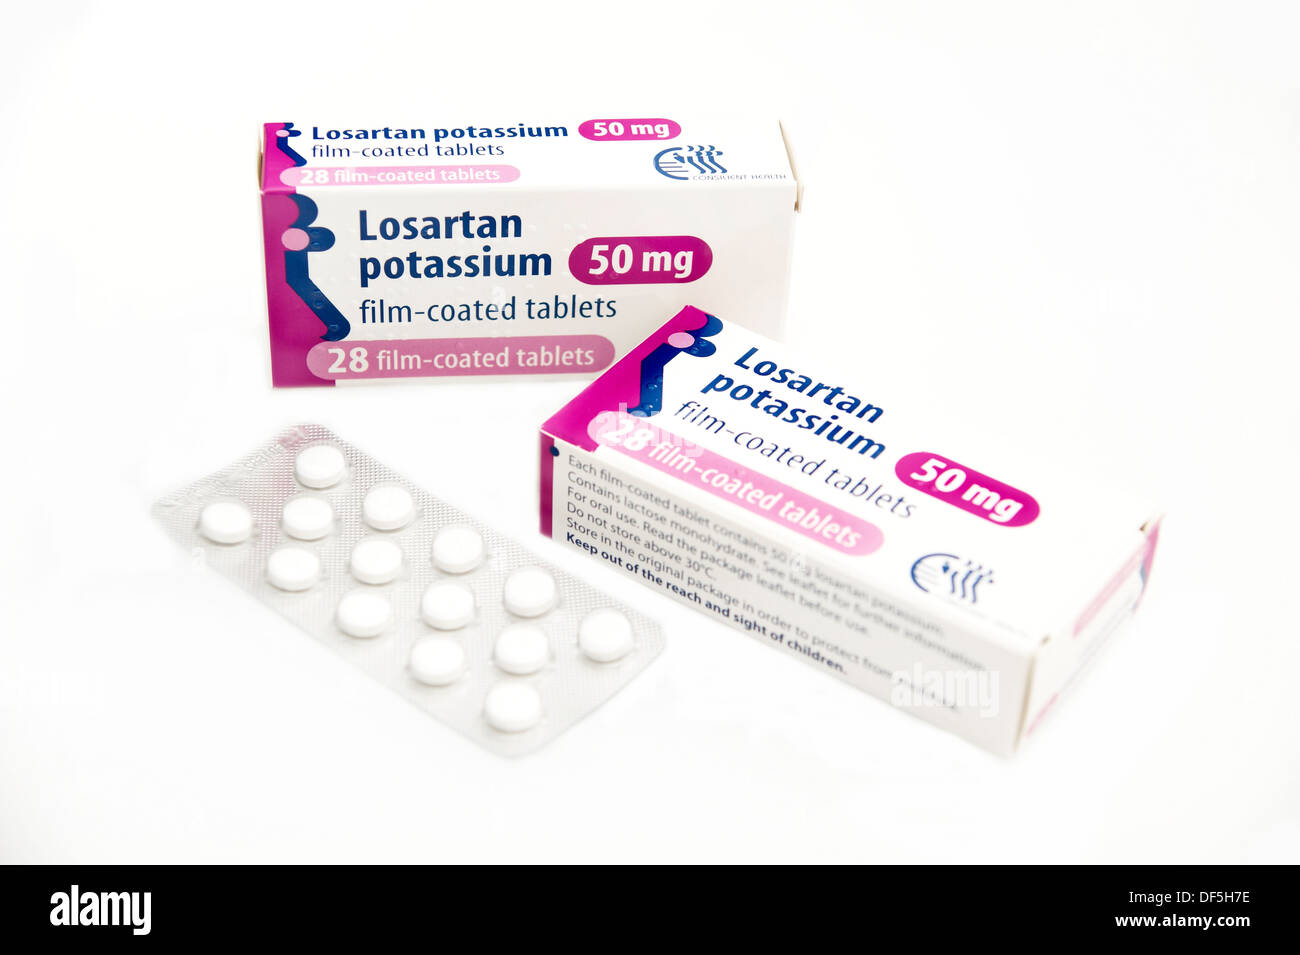 Losartán tabletas de potasio utilizado para bajar la presión arterial alta  Fotografía de stock - Alamy